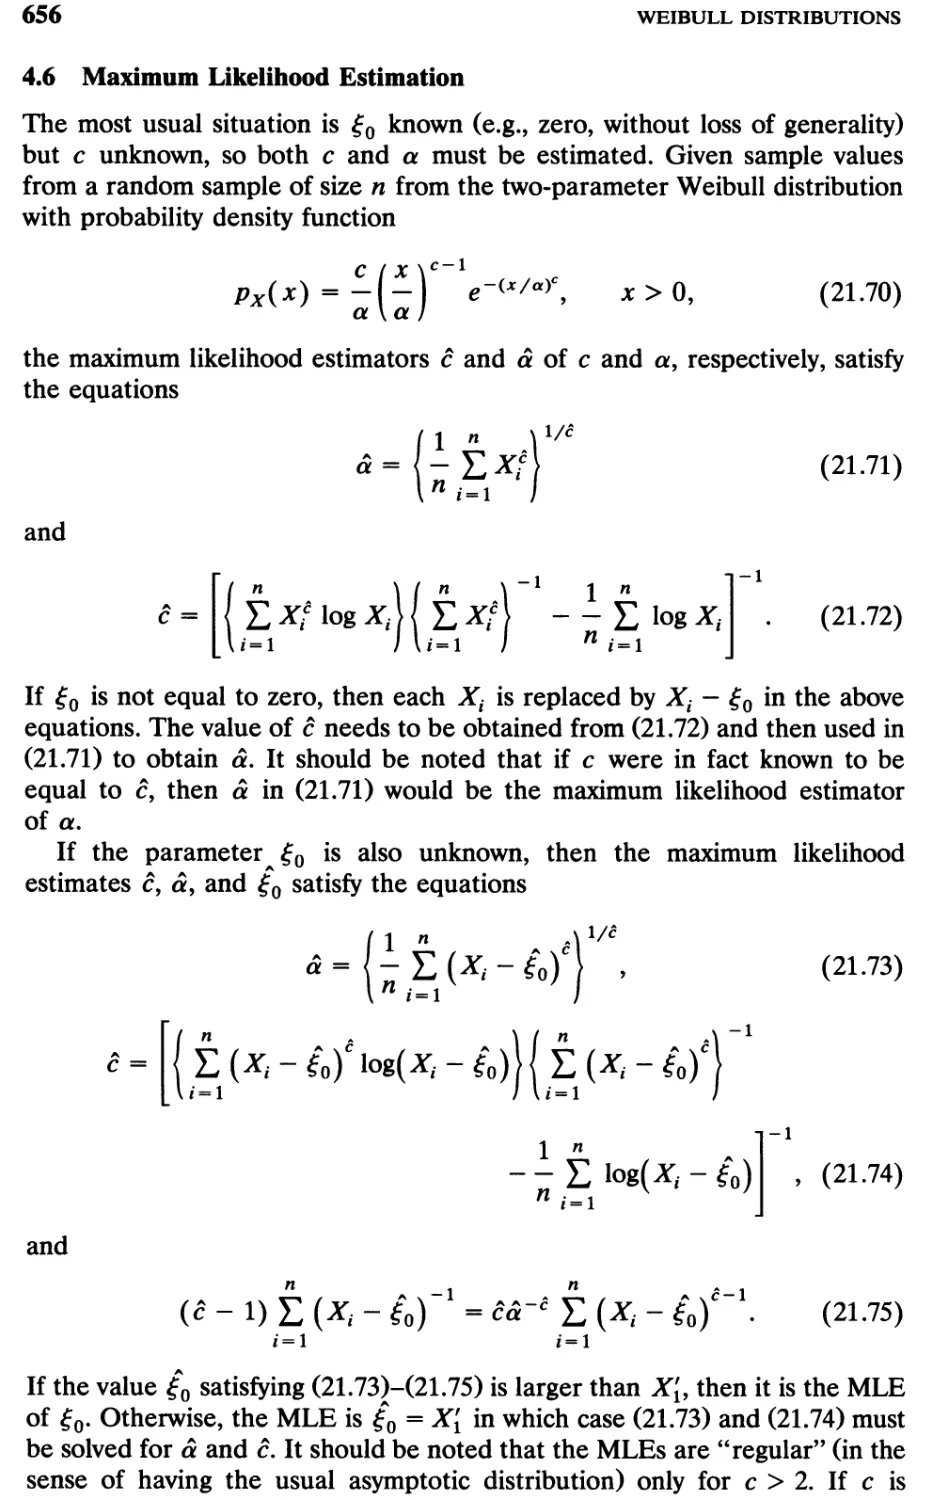 4.6 Maximum Likelihood Estimation, 656